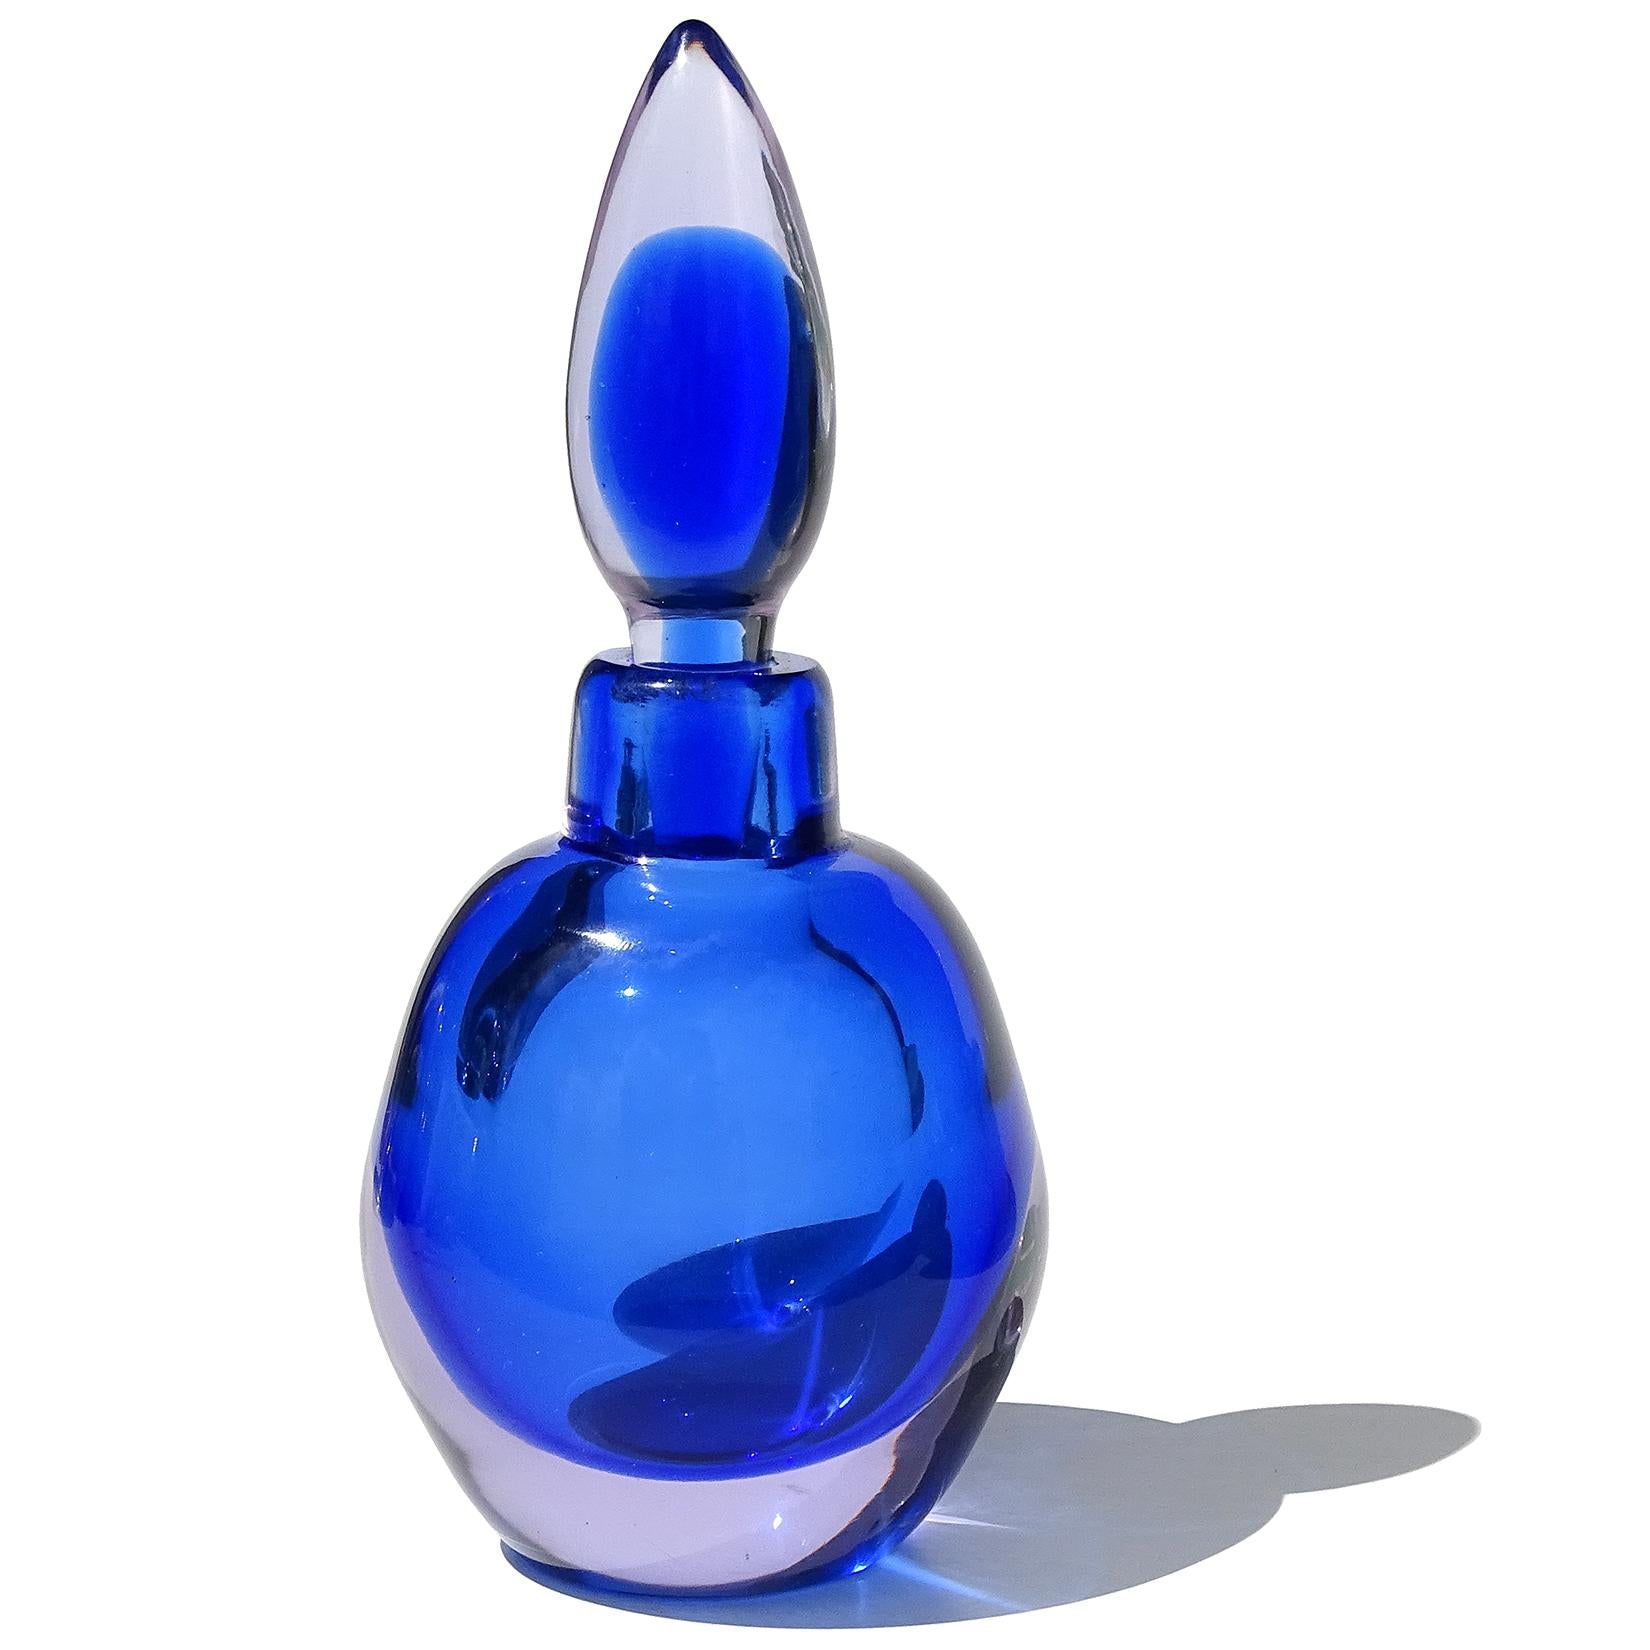 Precioso frasco de perfume vintage de cristal artístico italiano de Murano soplado a mano Sommerso azul zafiro y lavanda claro. La pieza está documentada a la empresa Seguso Vetri d'Arte. Lleva un tapón de lágrima original. El cuerpo del perfume